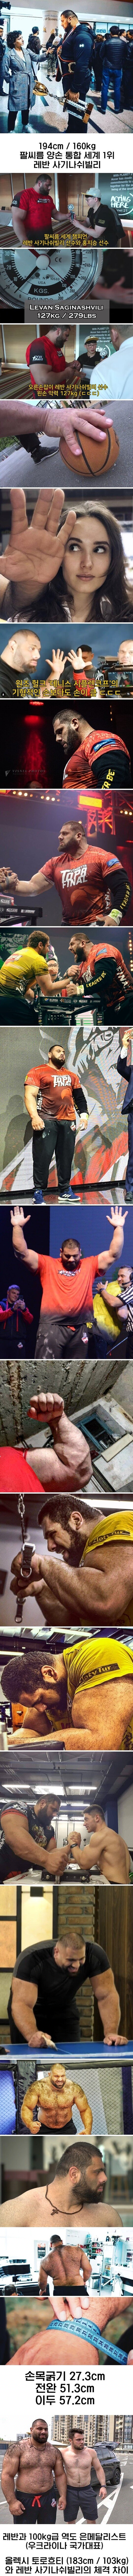 194cm 160kg. World champion of arm wrestling.jpg.